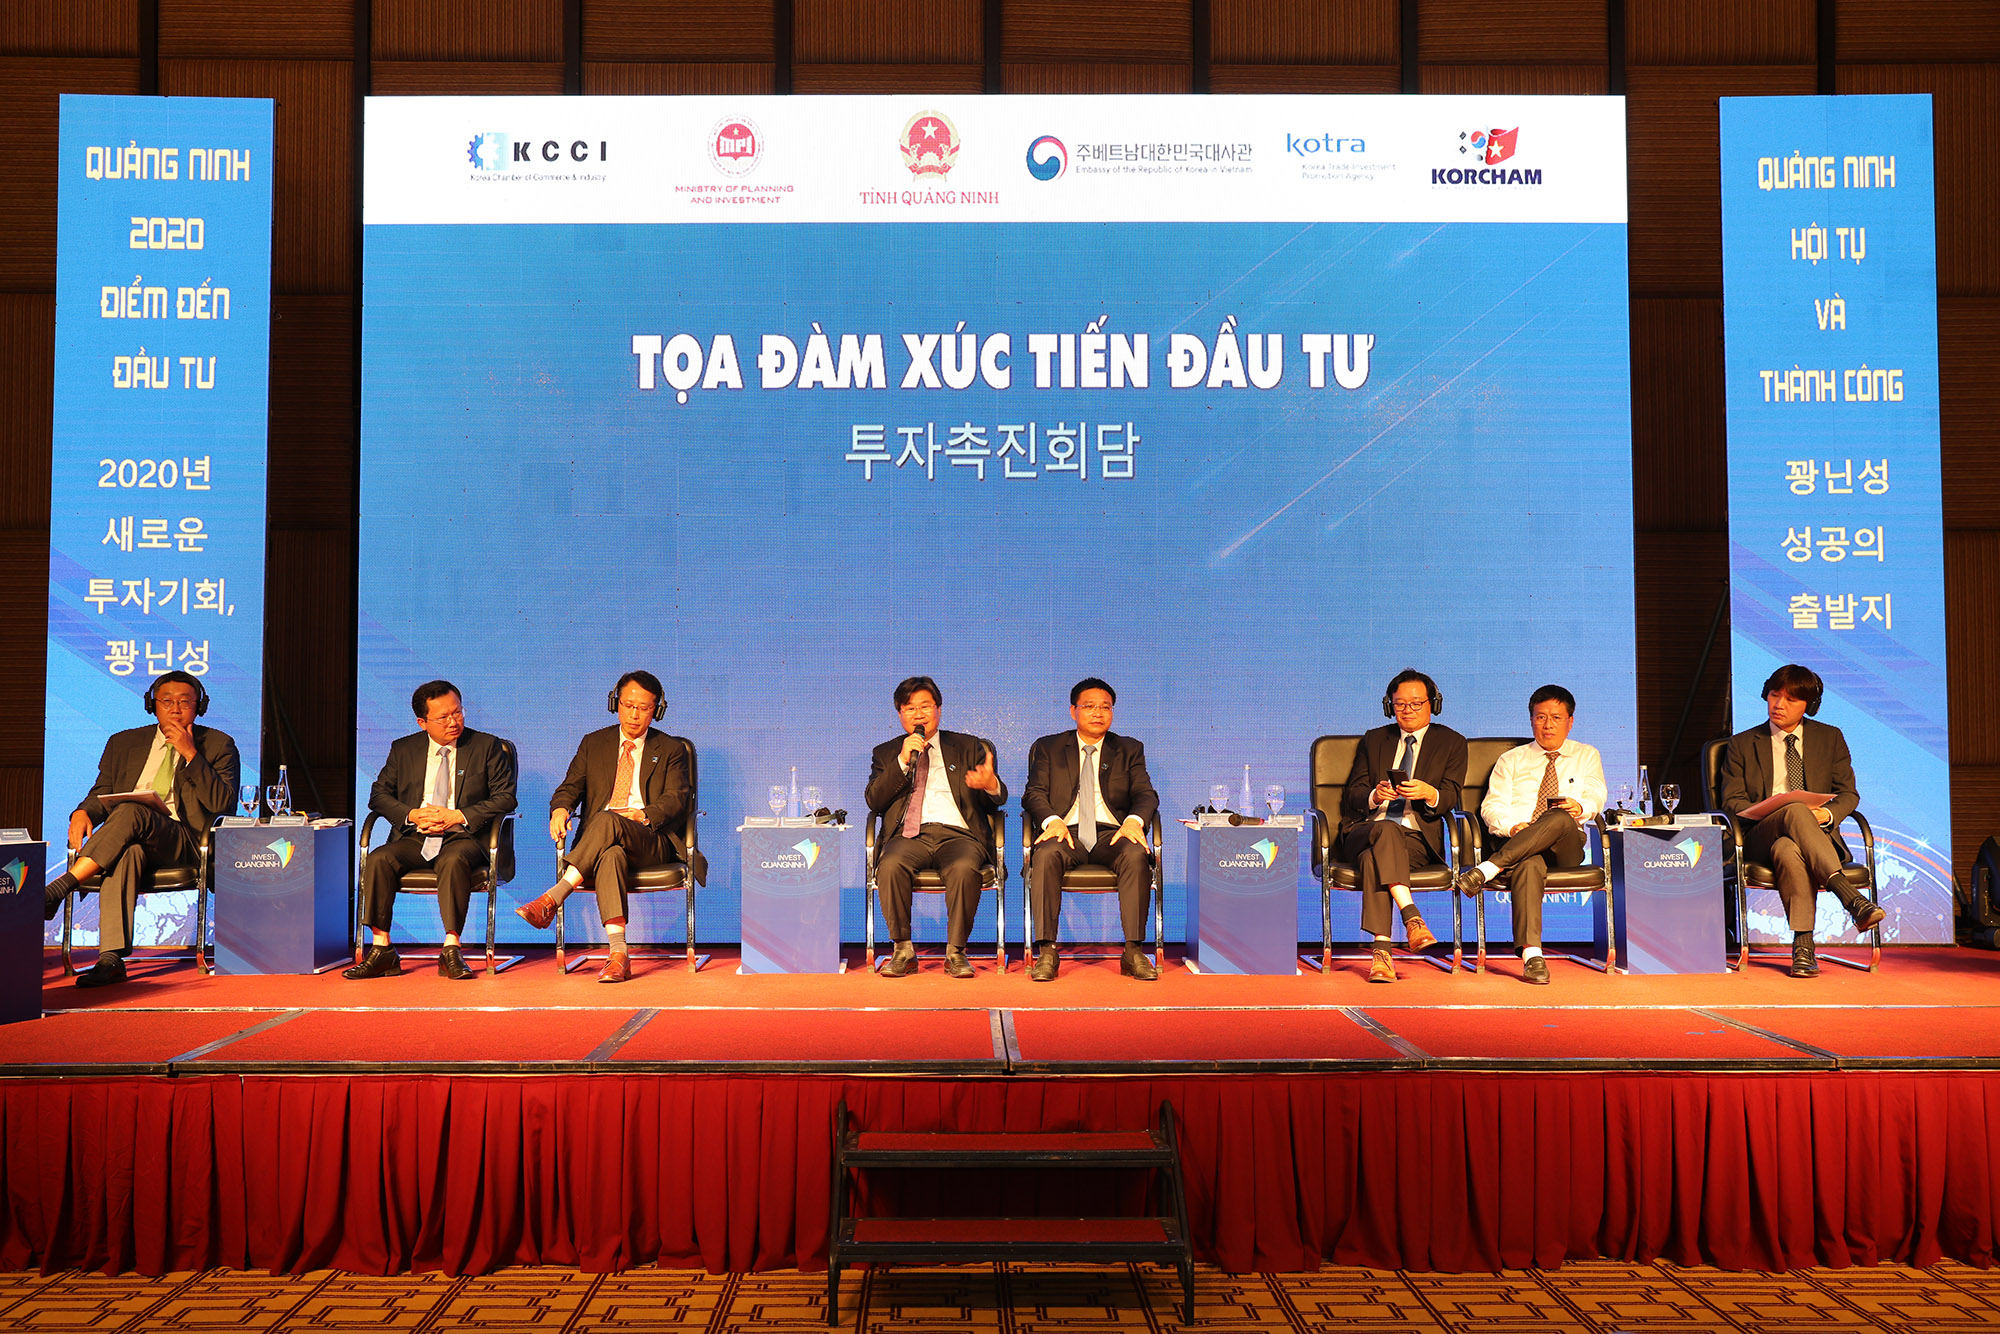 Quảng Ninh tổ chức chương trình Tọa đàm xúc tiến đầu tư “Quảng Ninh - Cơ hội đầu tư mới” với các nhà đầu tư Hàn Quốc. Ảnh: Đỗ Phương. 